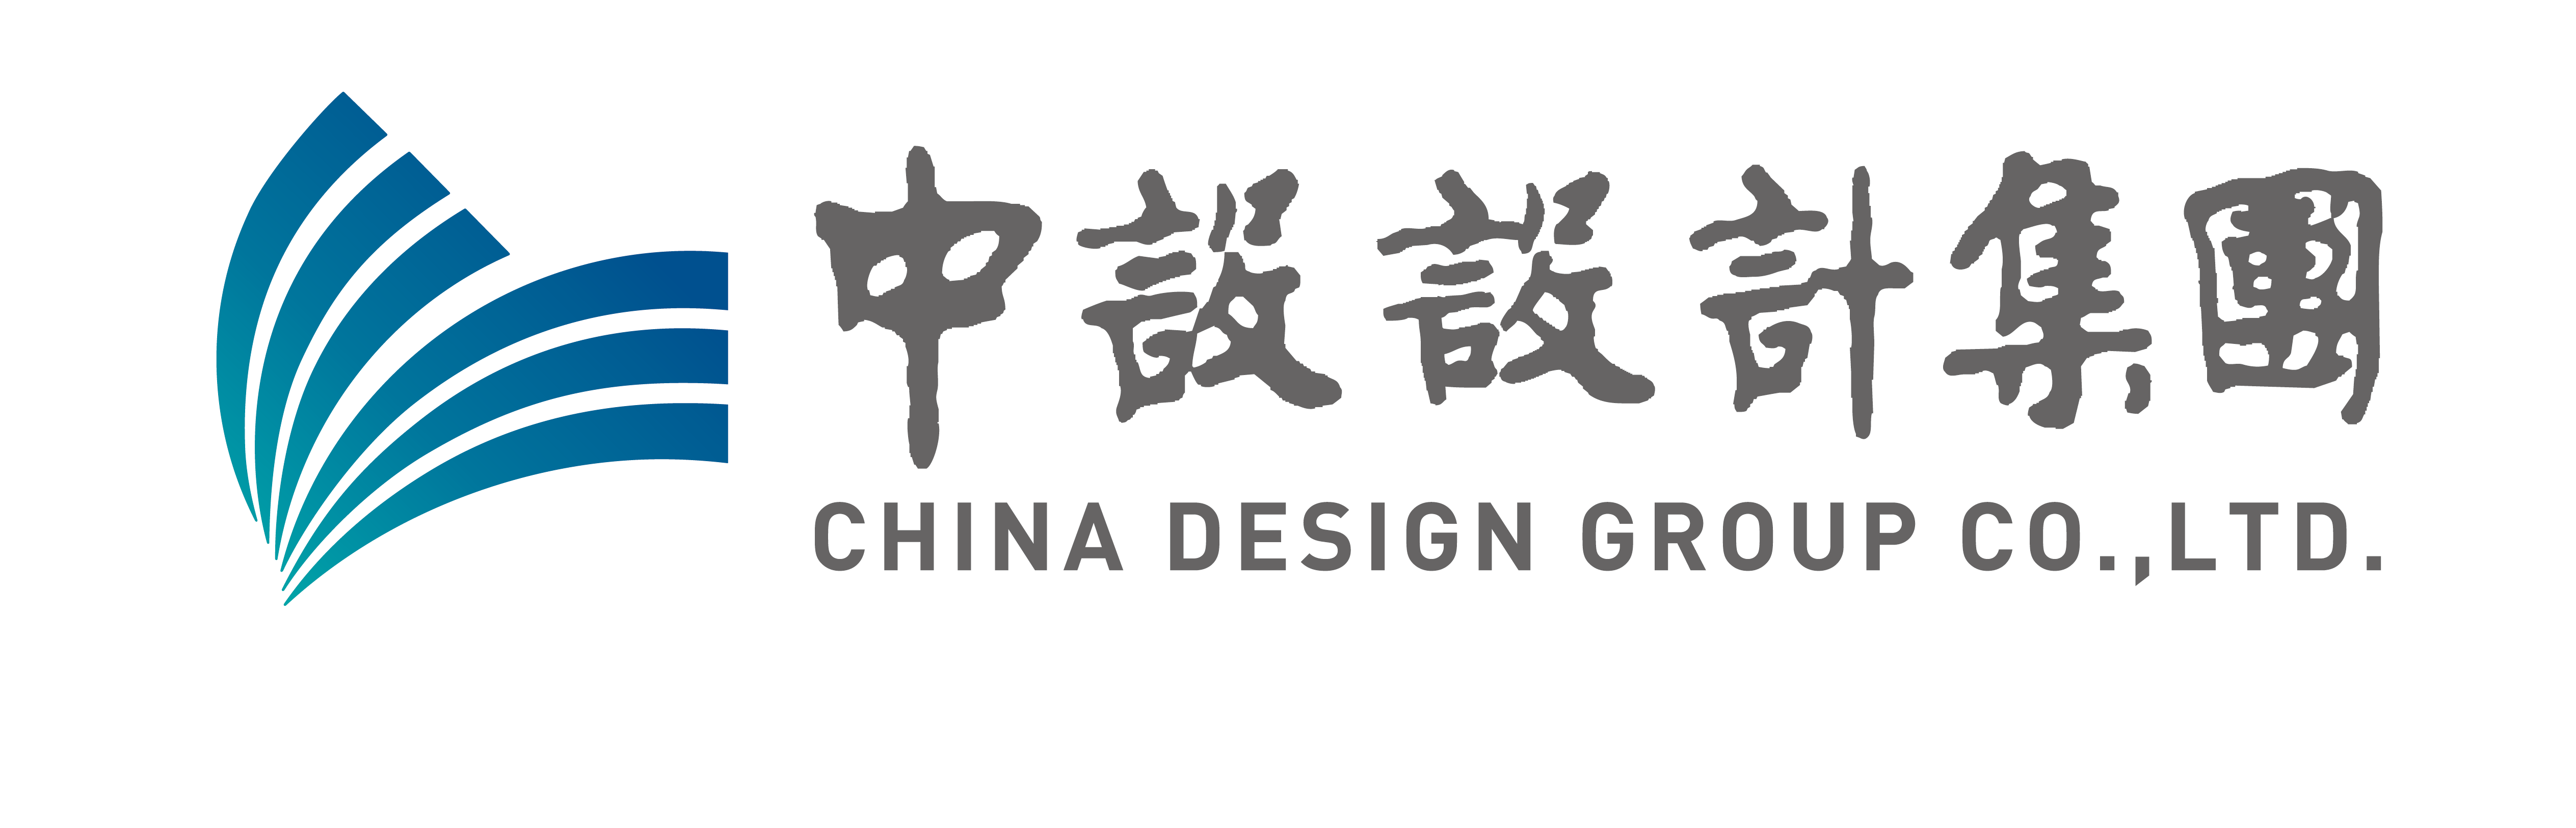 中设集团中设设计集团是一家综合性工程咨询集团,前身为始建于1966年